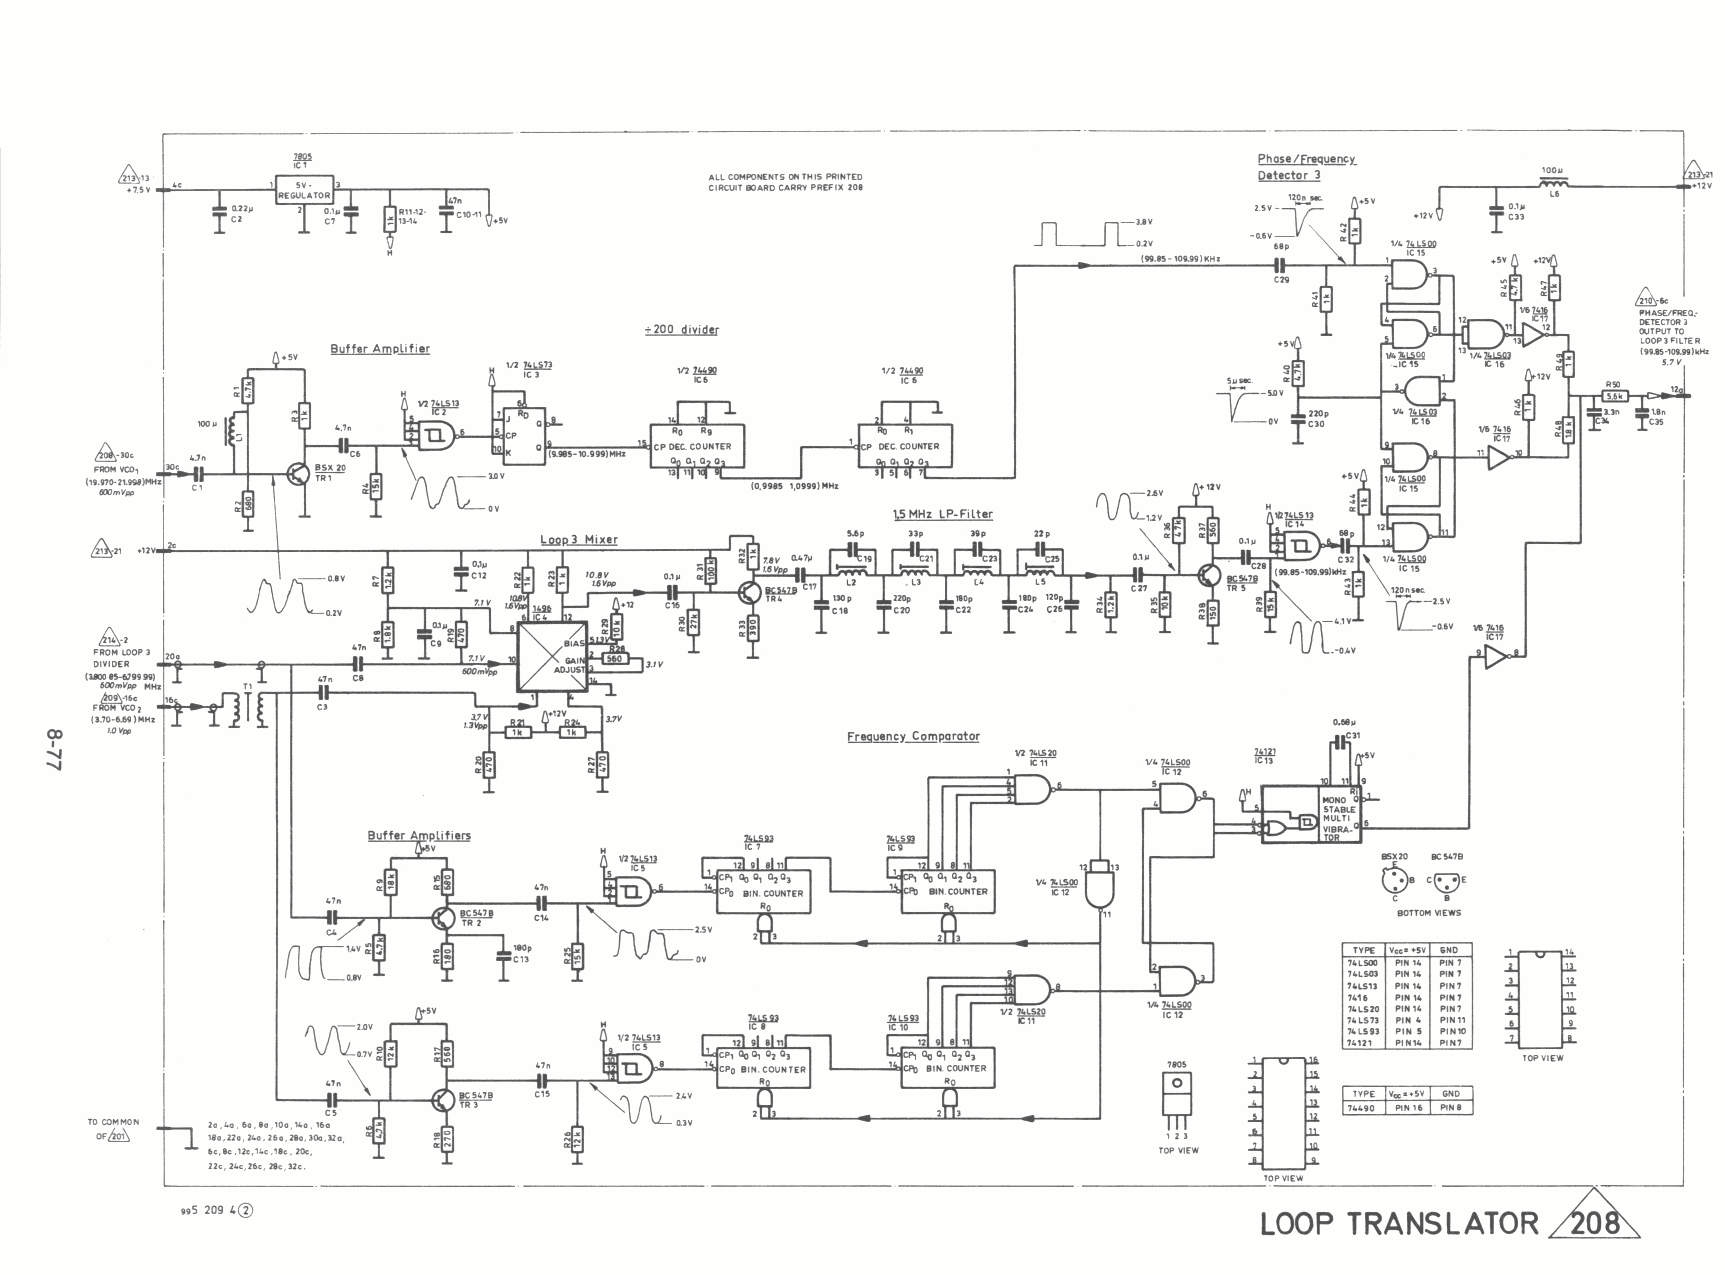 Skanti HF Loop_translator diagram 208